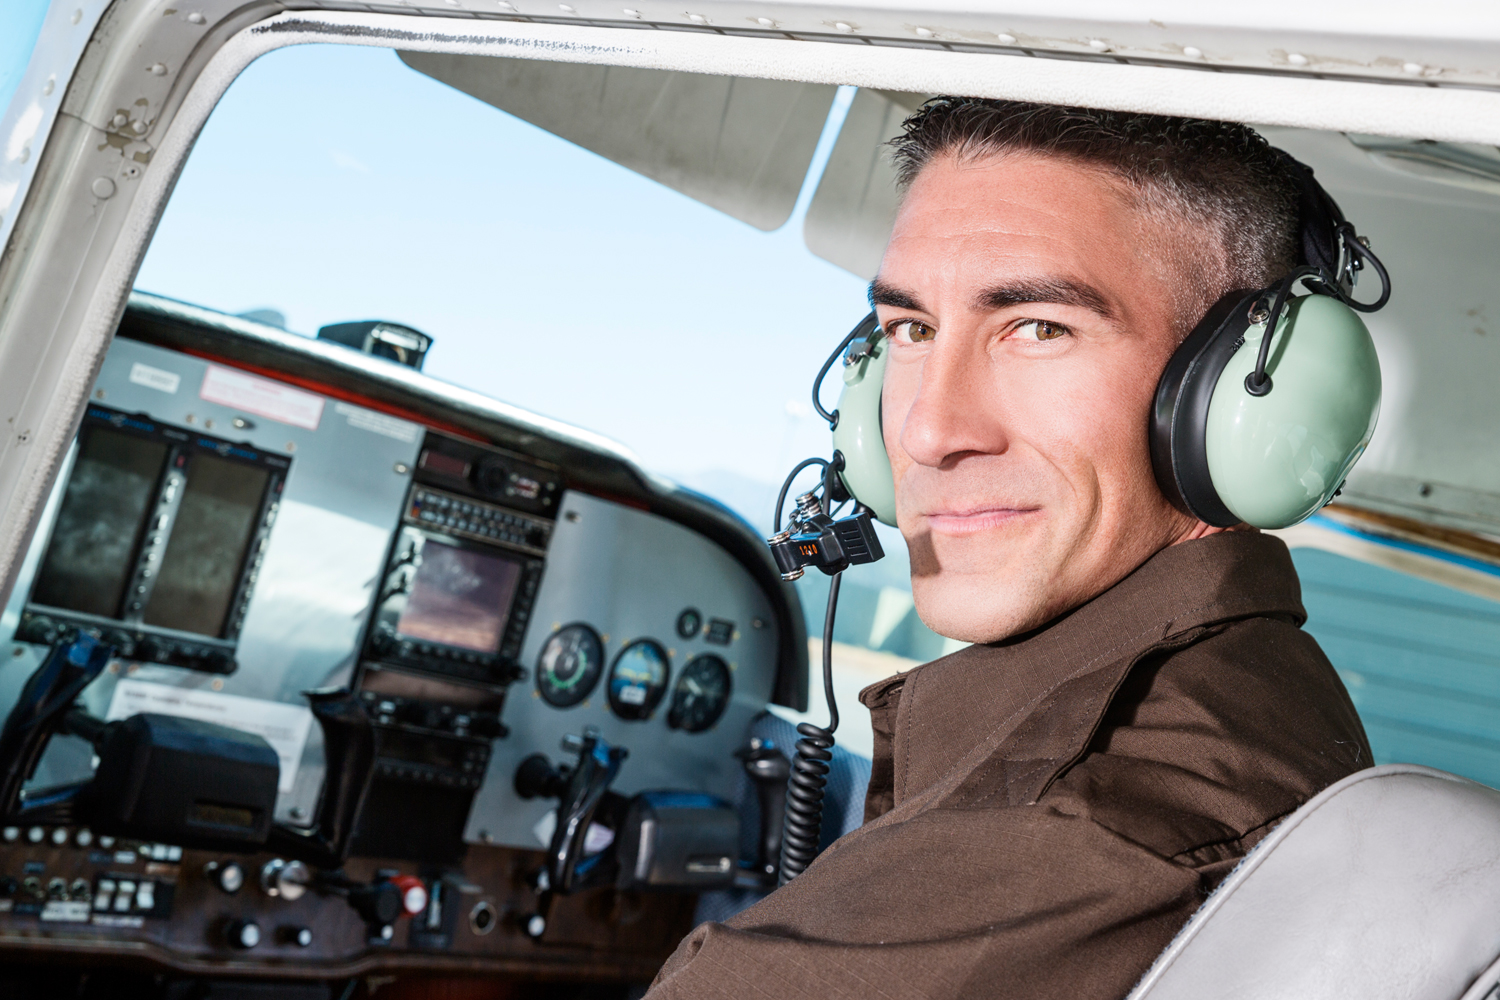 General aviation pilot wearing a headset on the flight deck of an aircraft